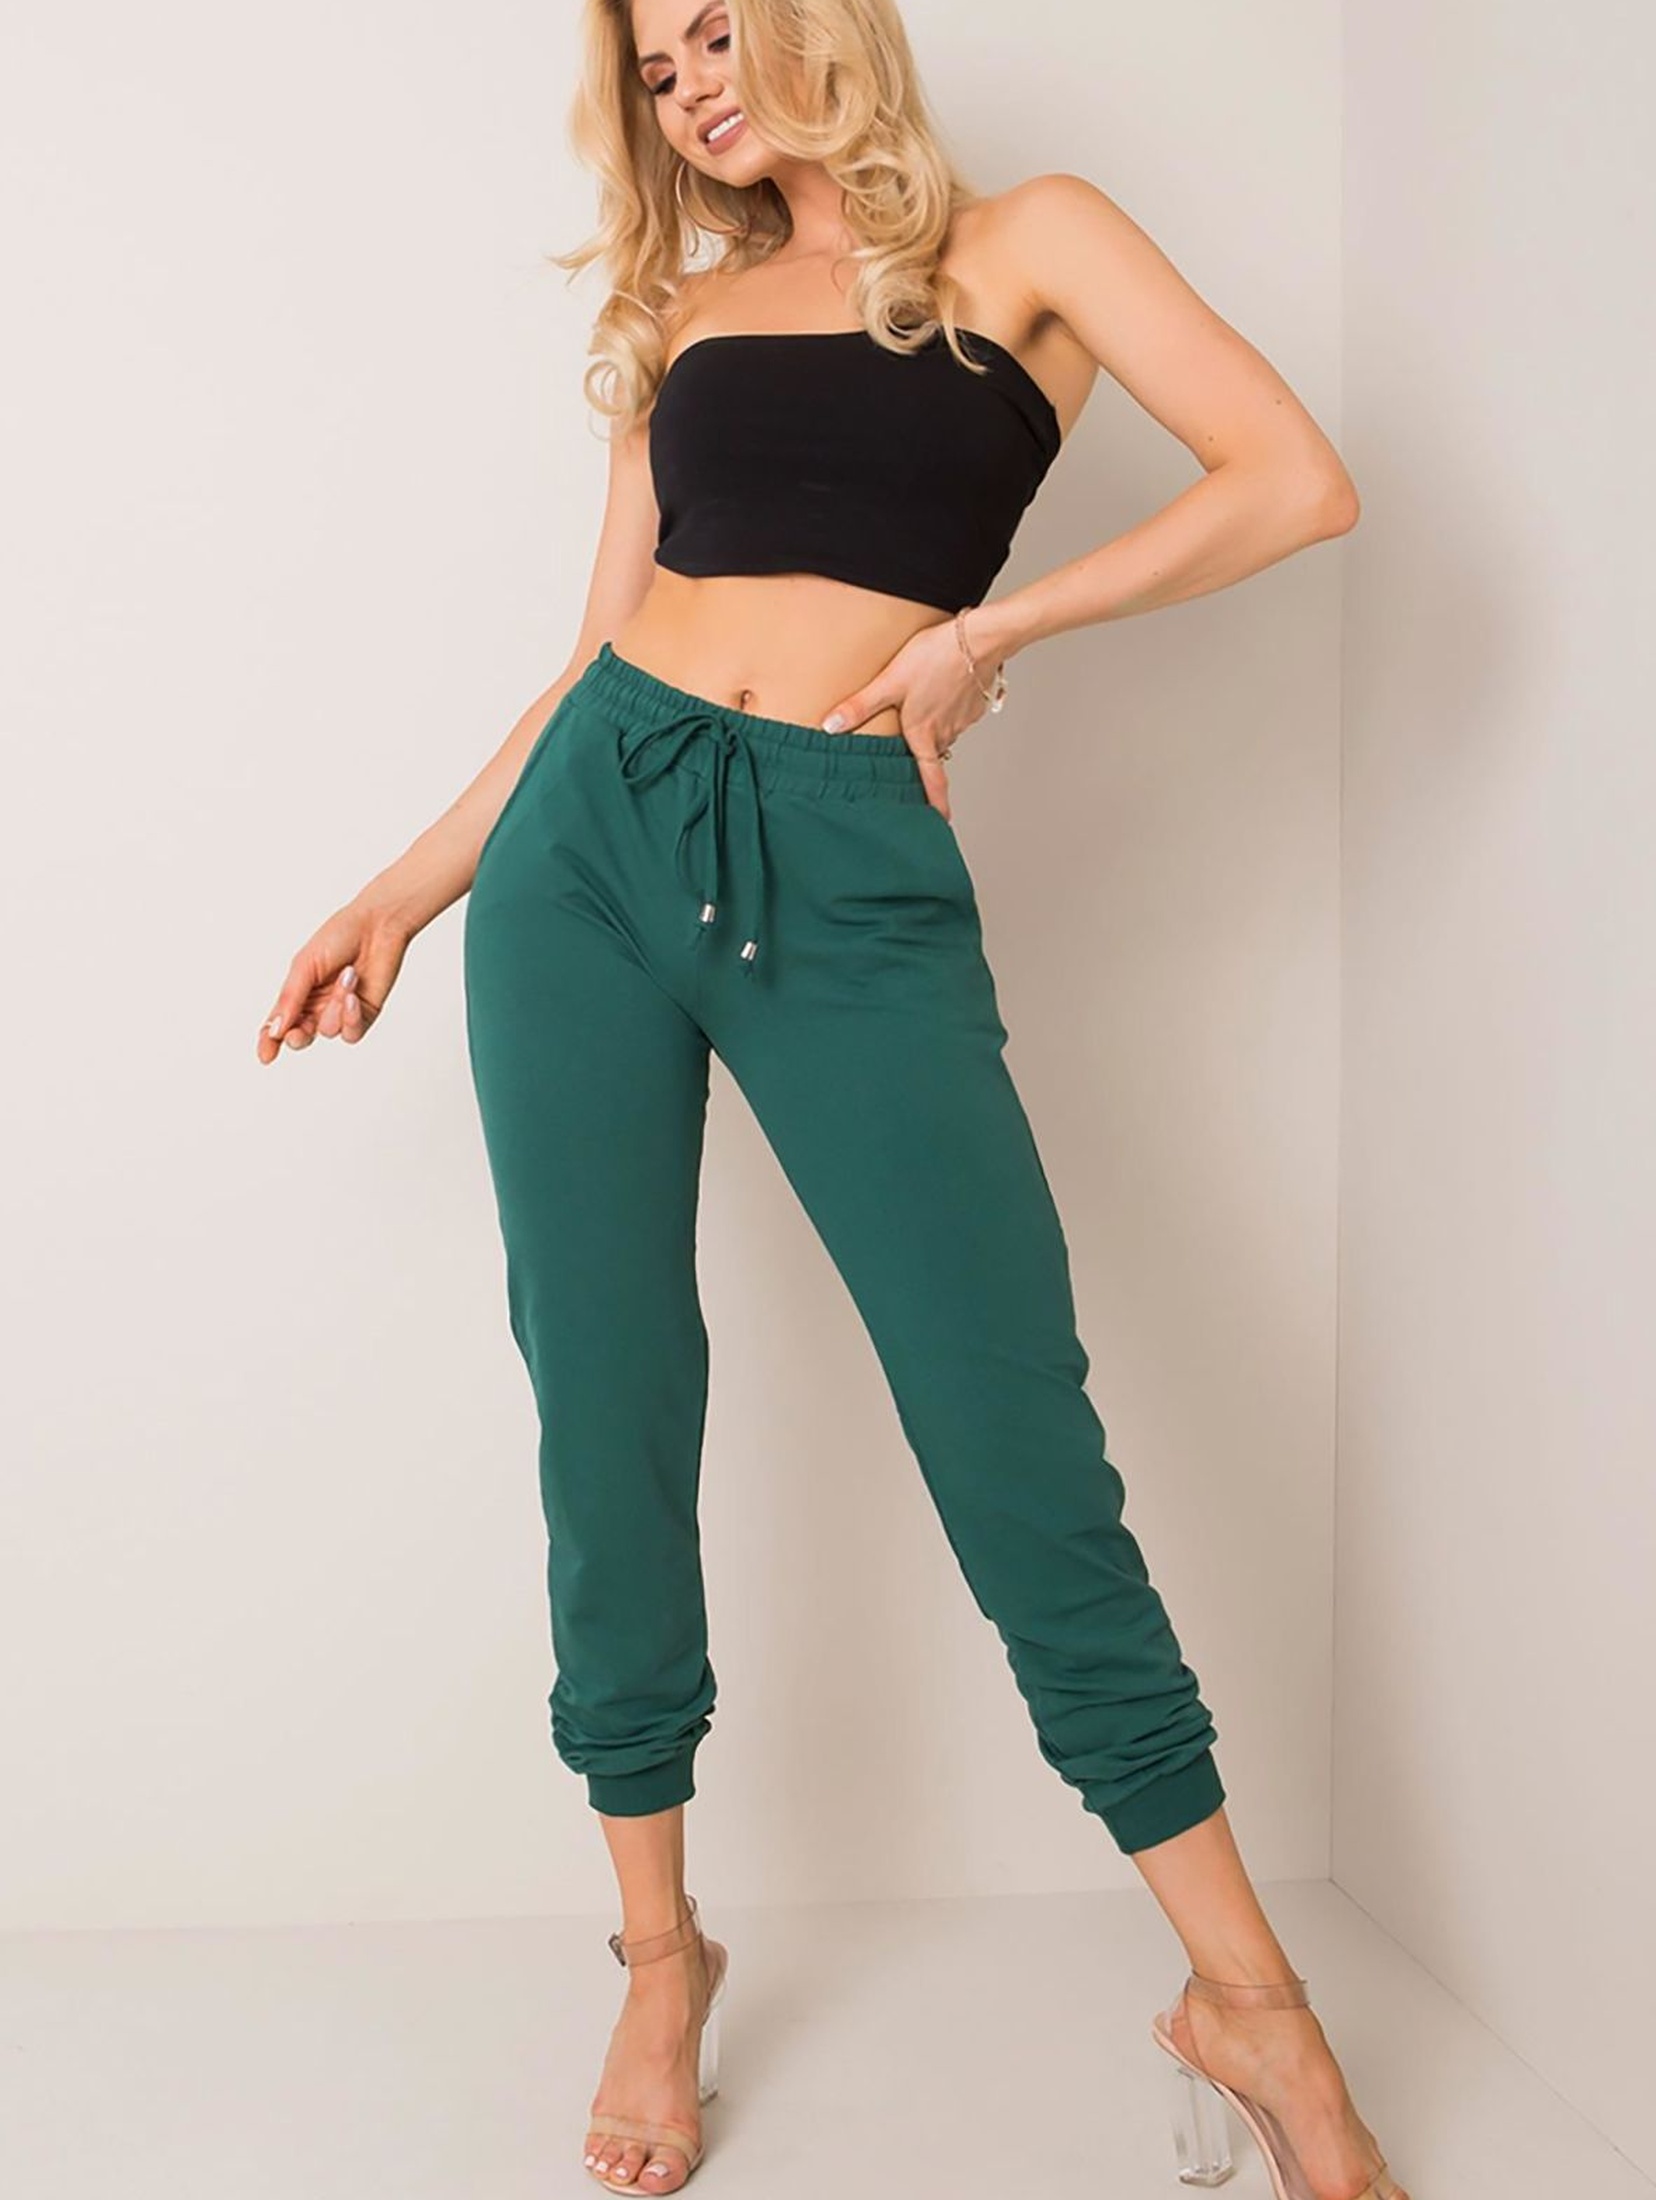 Spodnie dresowe damskie basic zielone